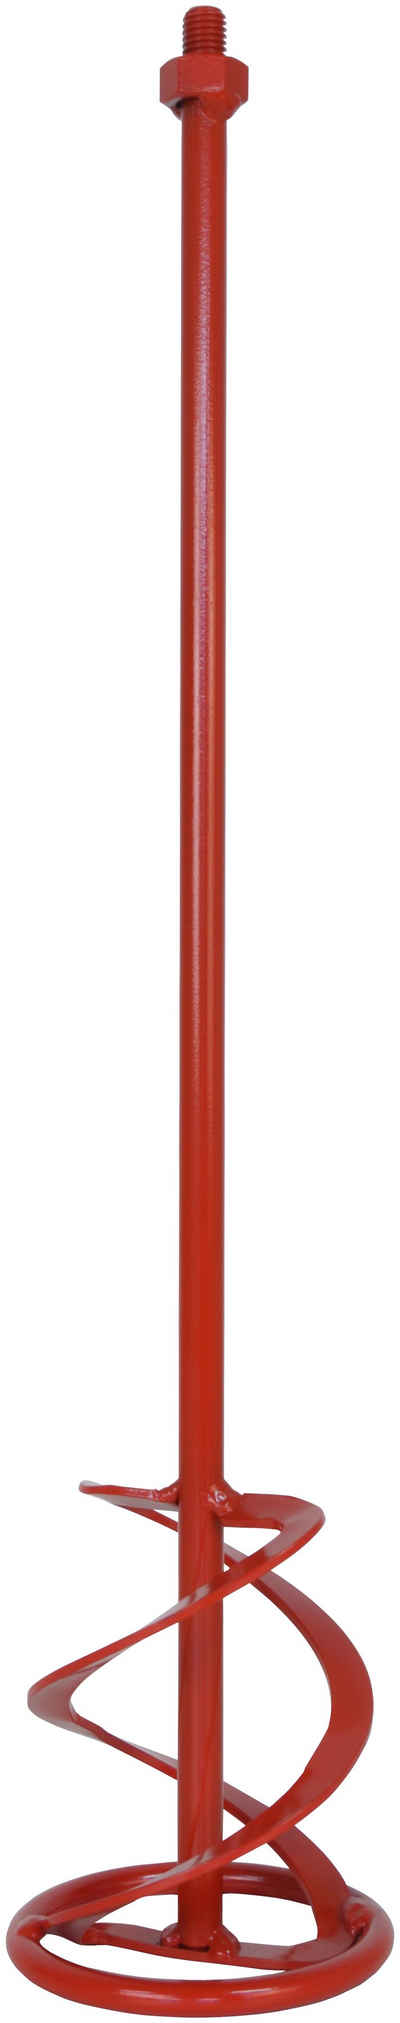 Connex Rührquirl M14 Werkzeugaufnahme - Geeignet für Mörtel & Putzen ; Rührkorb, L: 60 cm, Mischgut bis 25 kg - Für handelsübliche Rührwerke